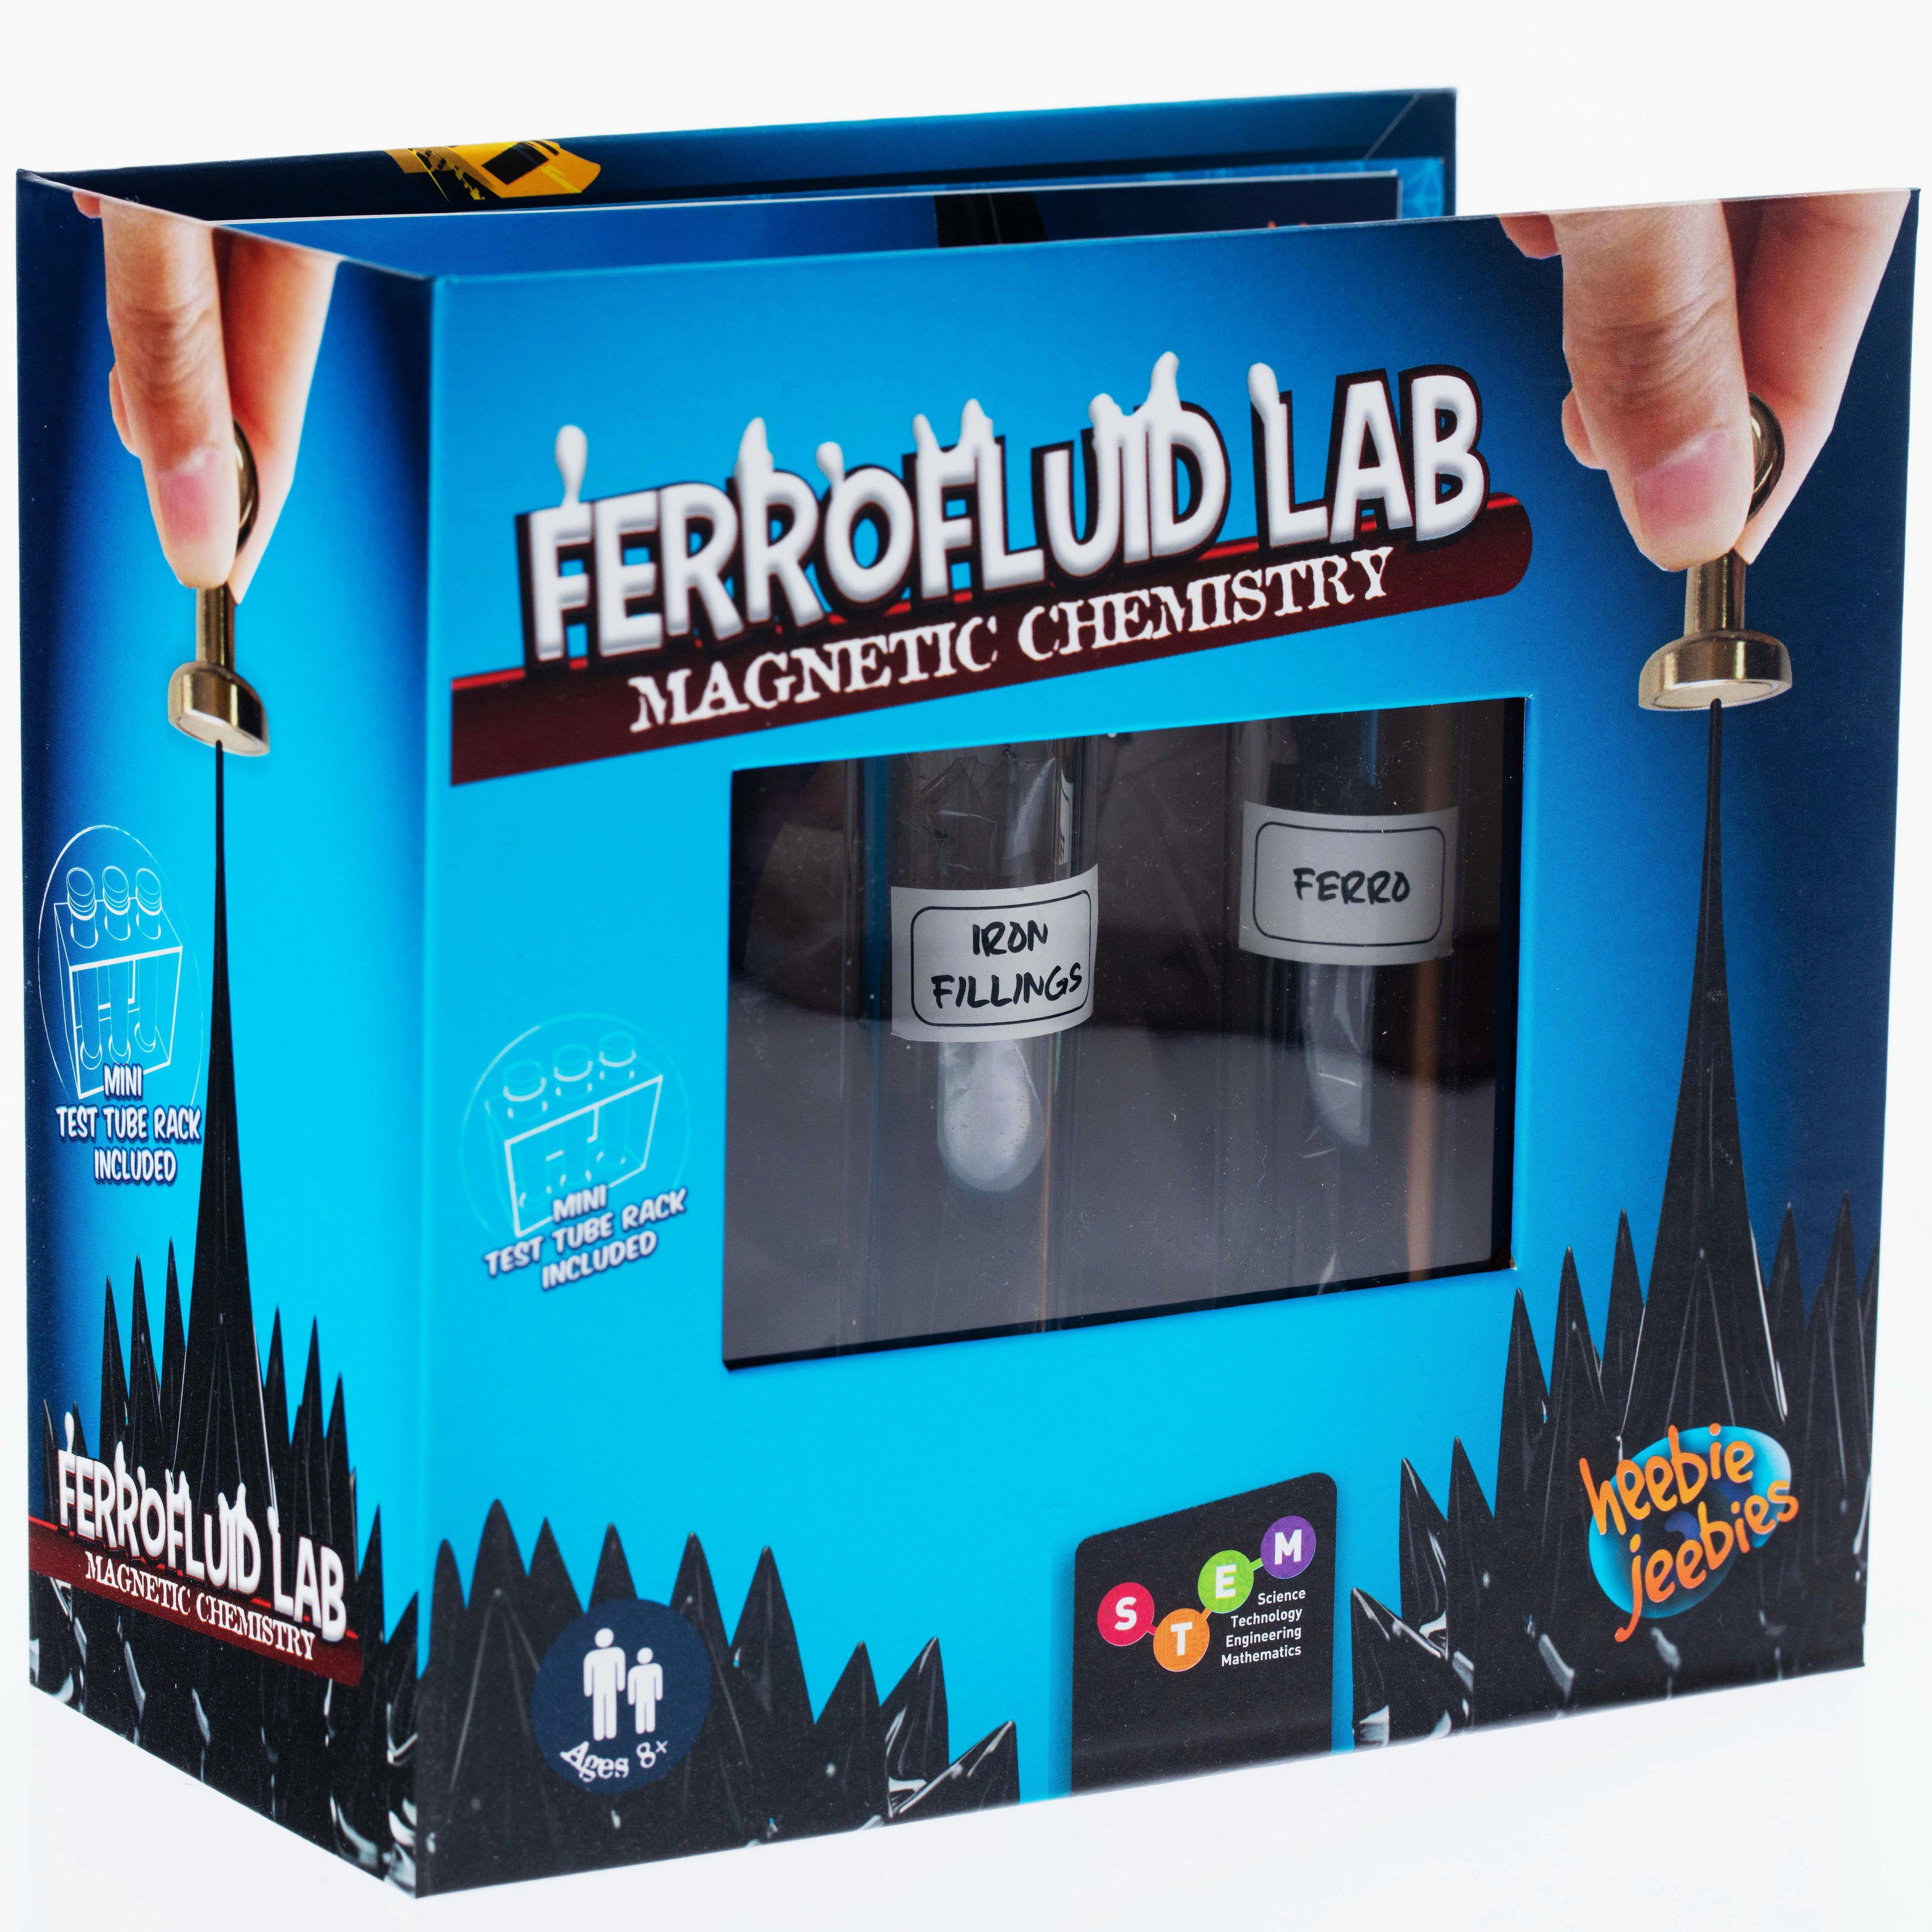 Ferrofluid Lab Test Tubes